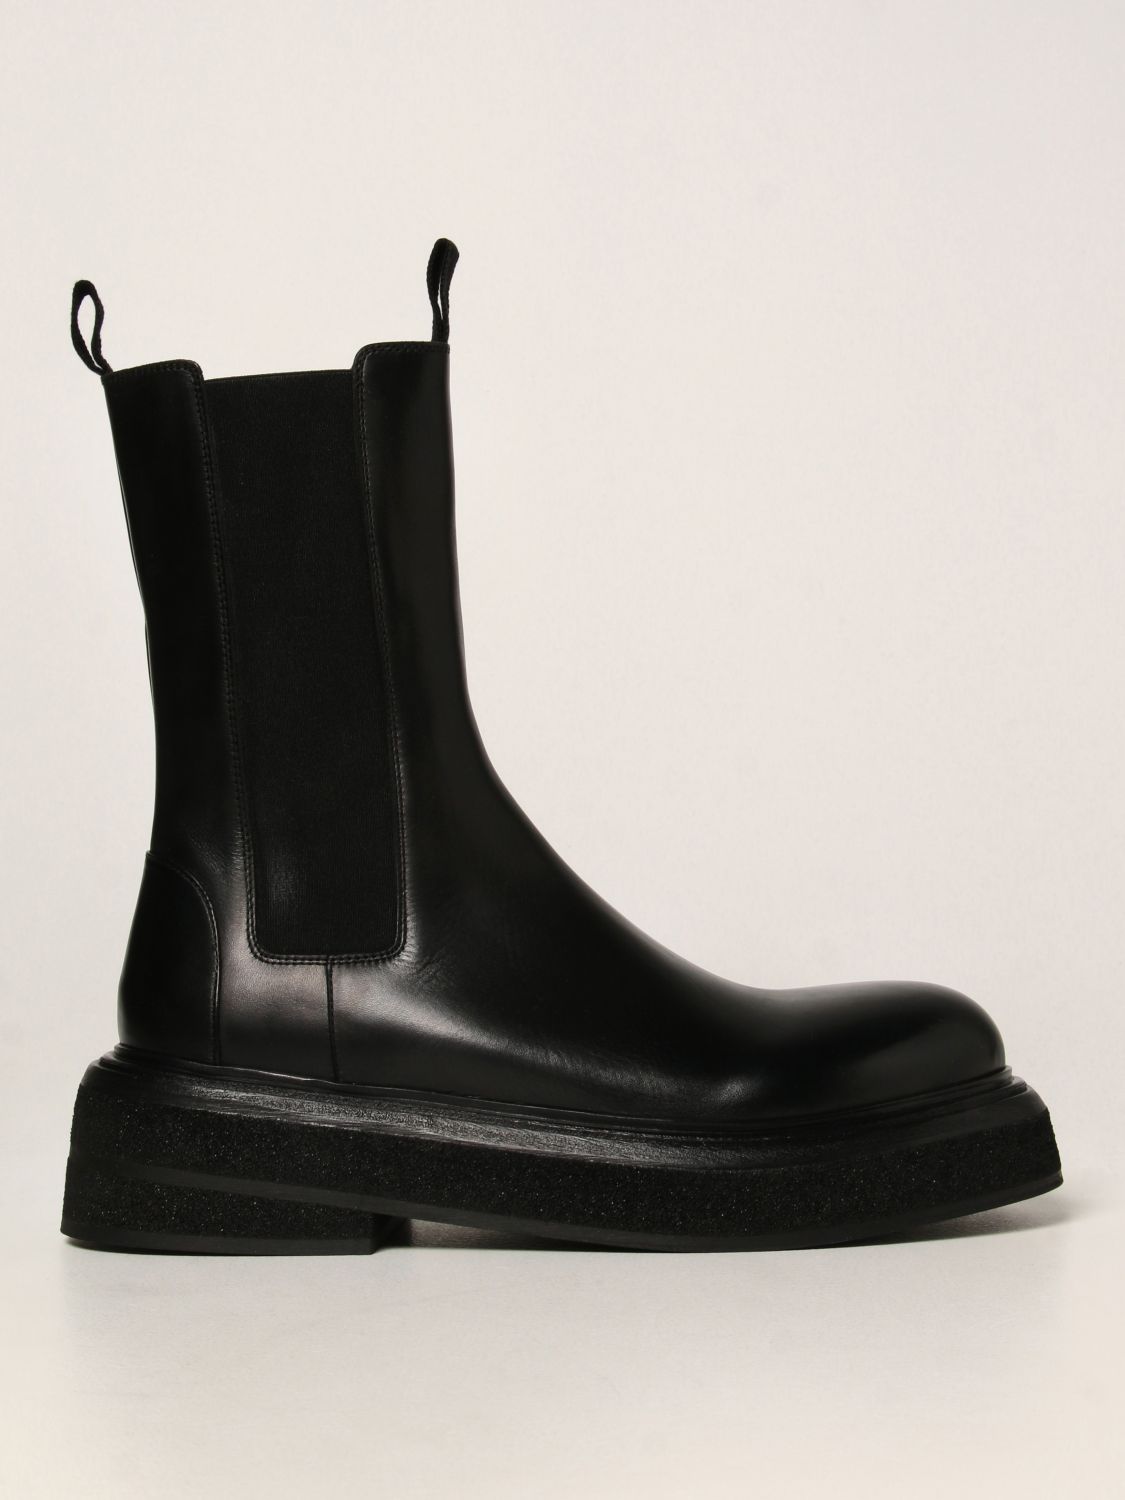 MARSÈLL: Zuccone leather boots - Black | Marsèll boots MM4115118 online ...